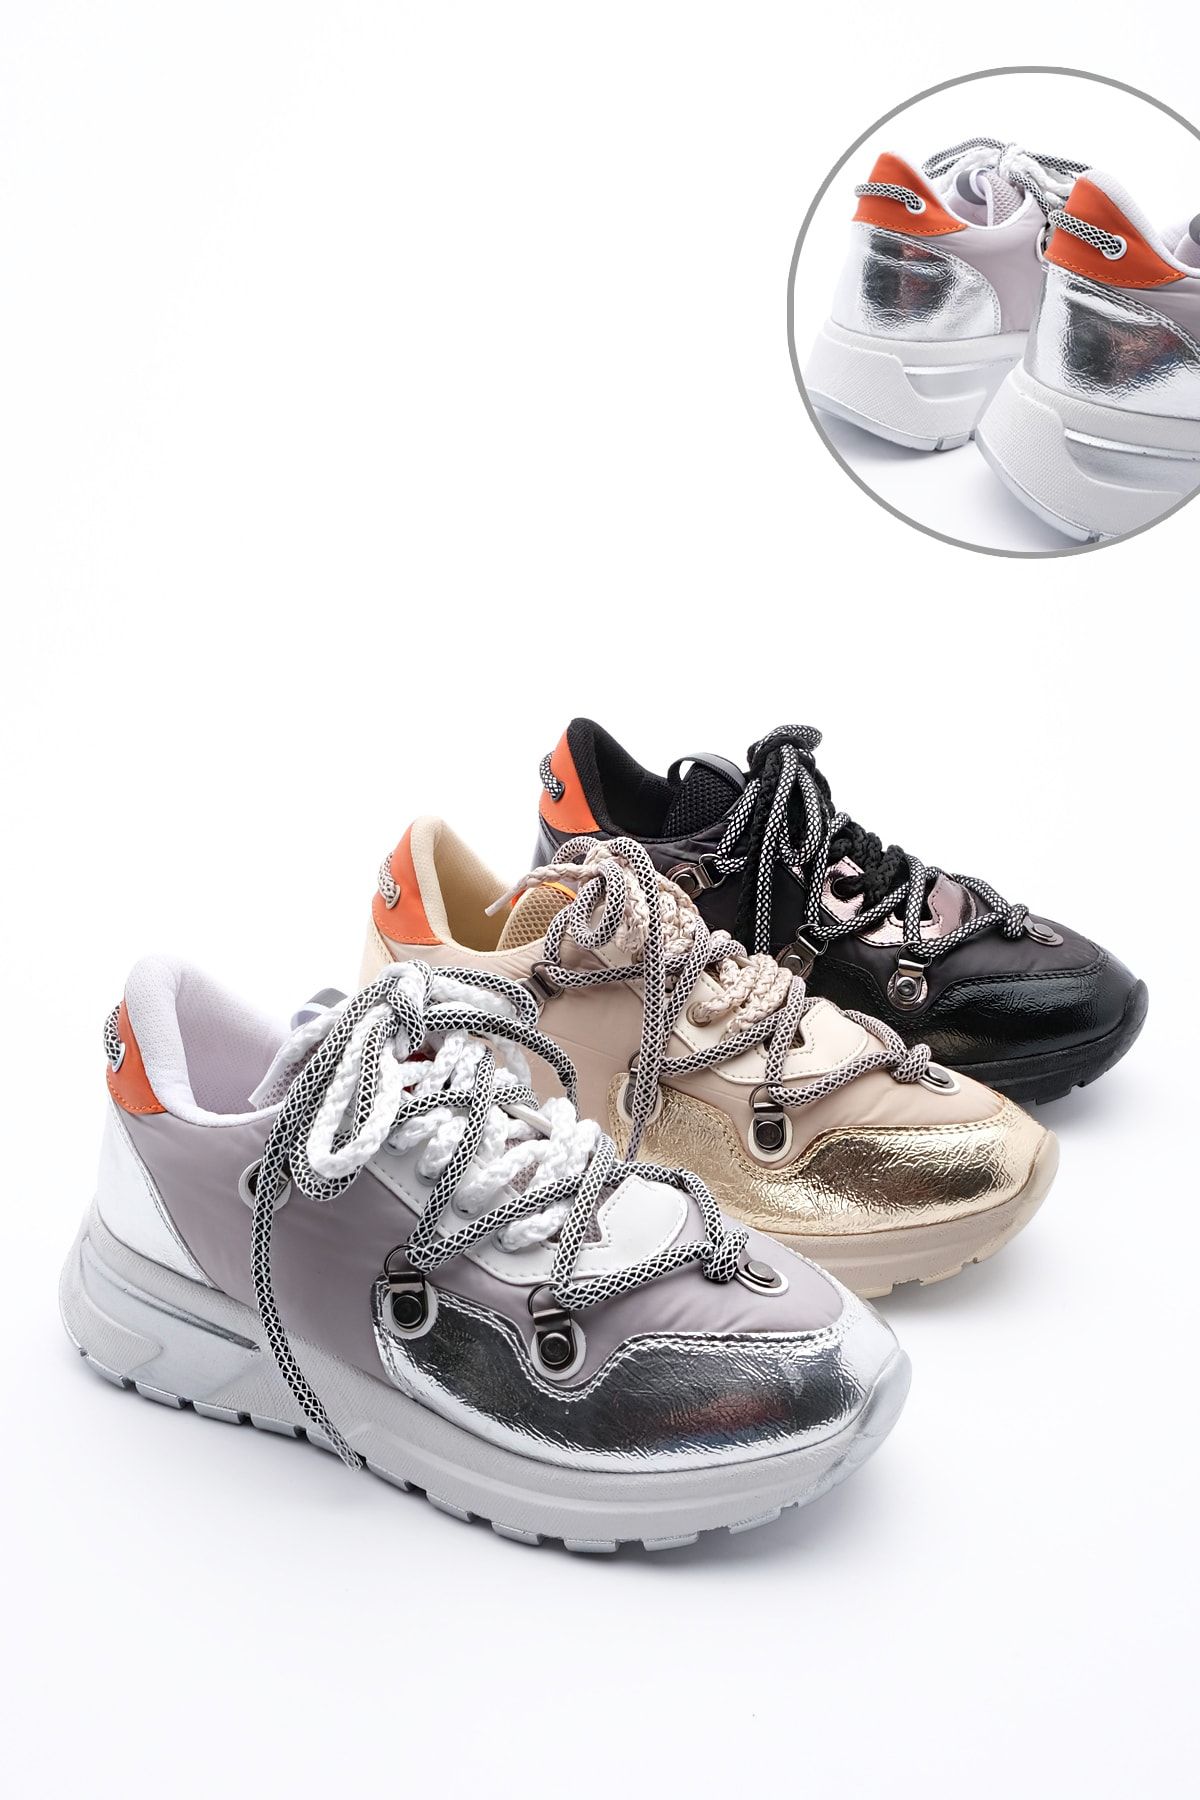 Marjin Kadın Gümüş Dolgu Topuk Spor Ayakkabı Sneaker